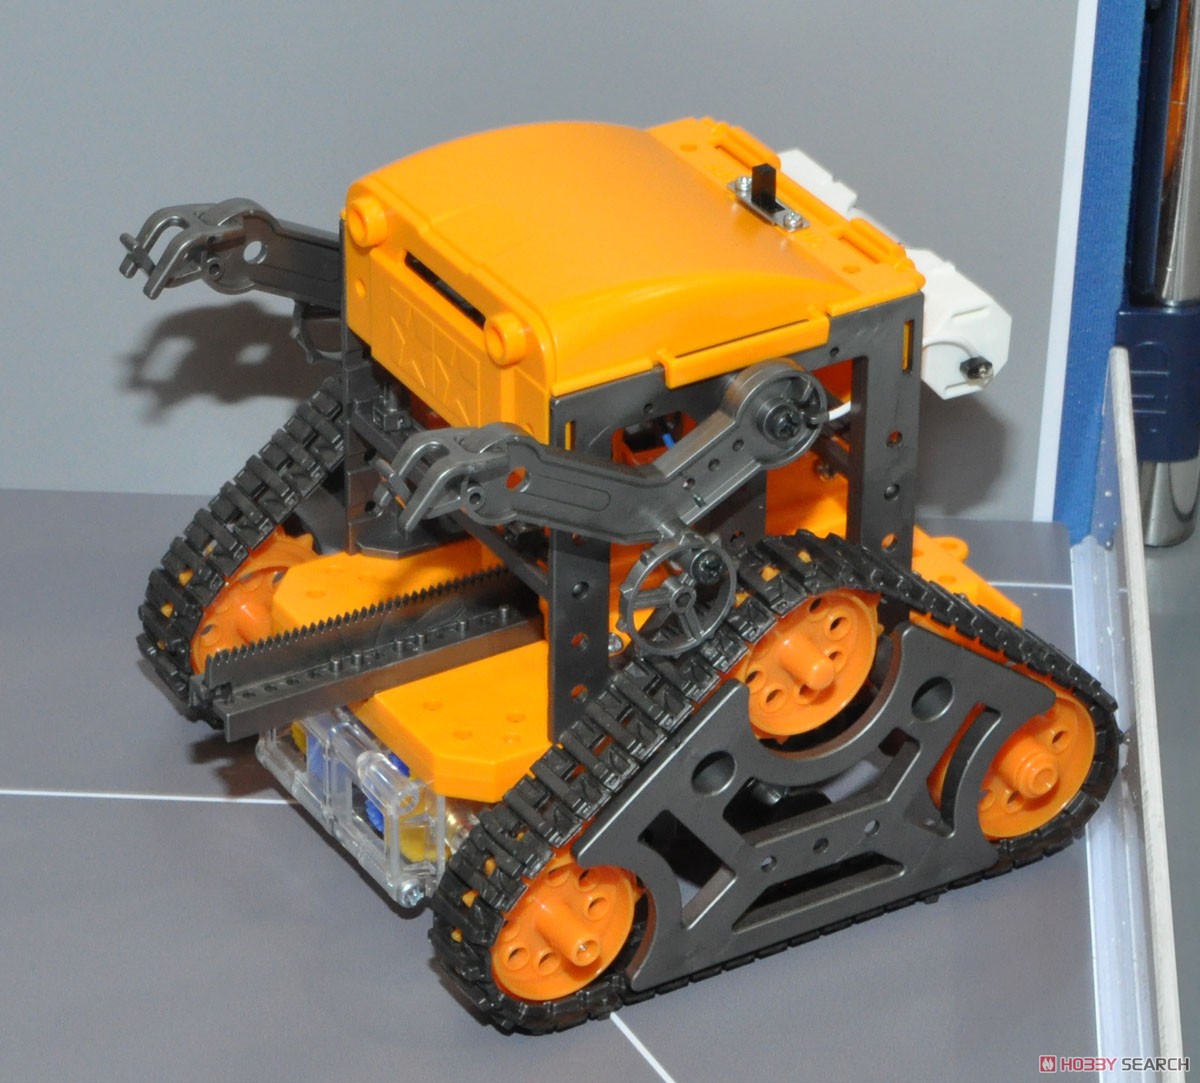 カムプログラムロボット工作セット (ガンメタル/オレンジ) (工作キット) その他の画像1